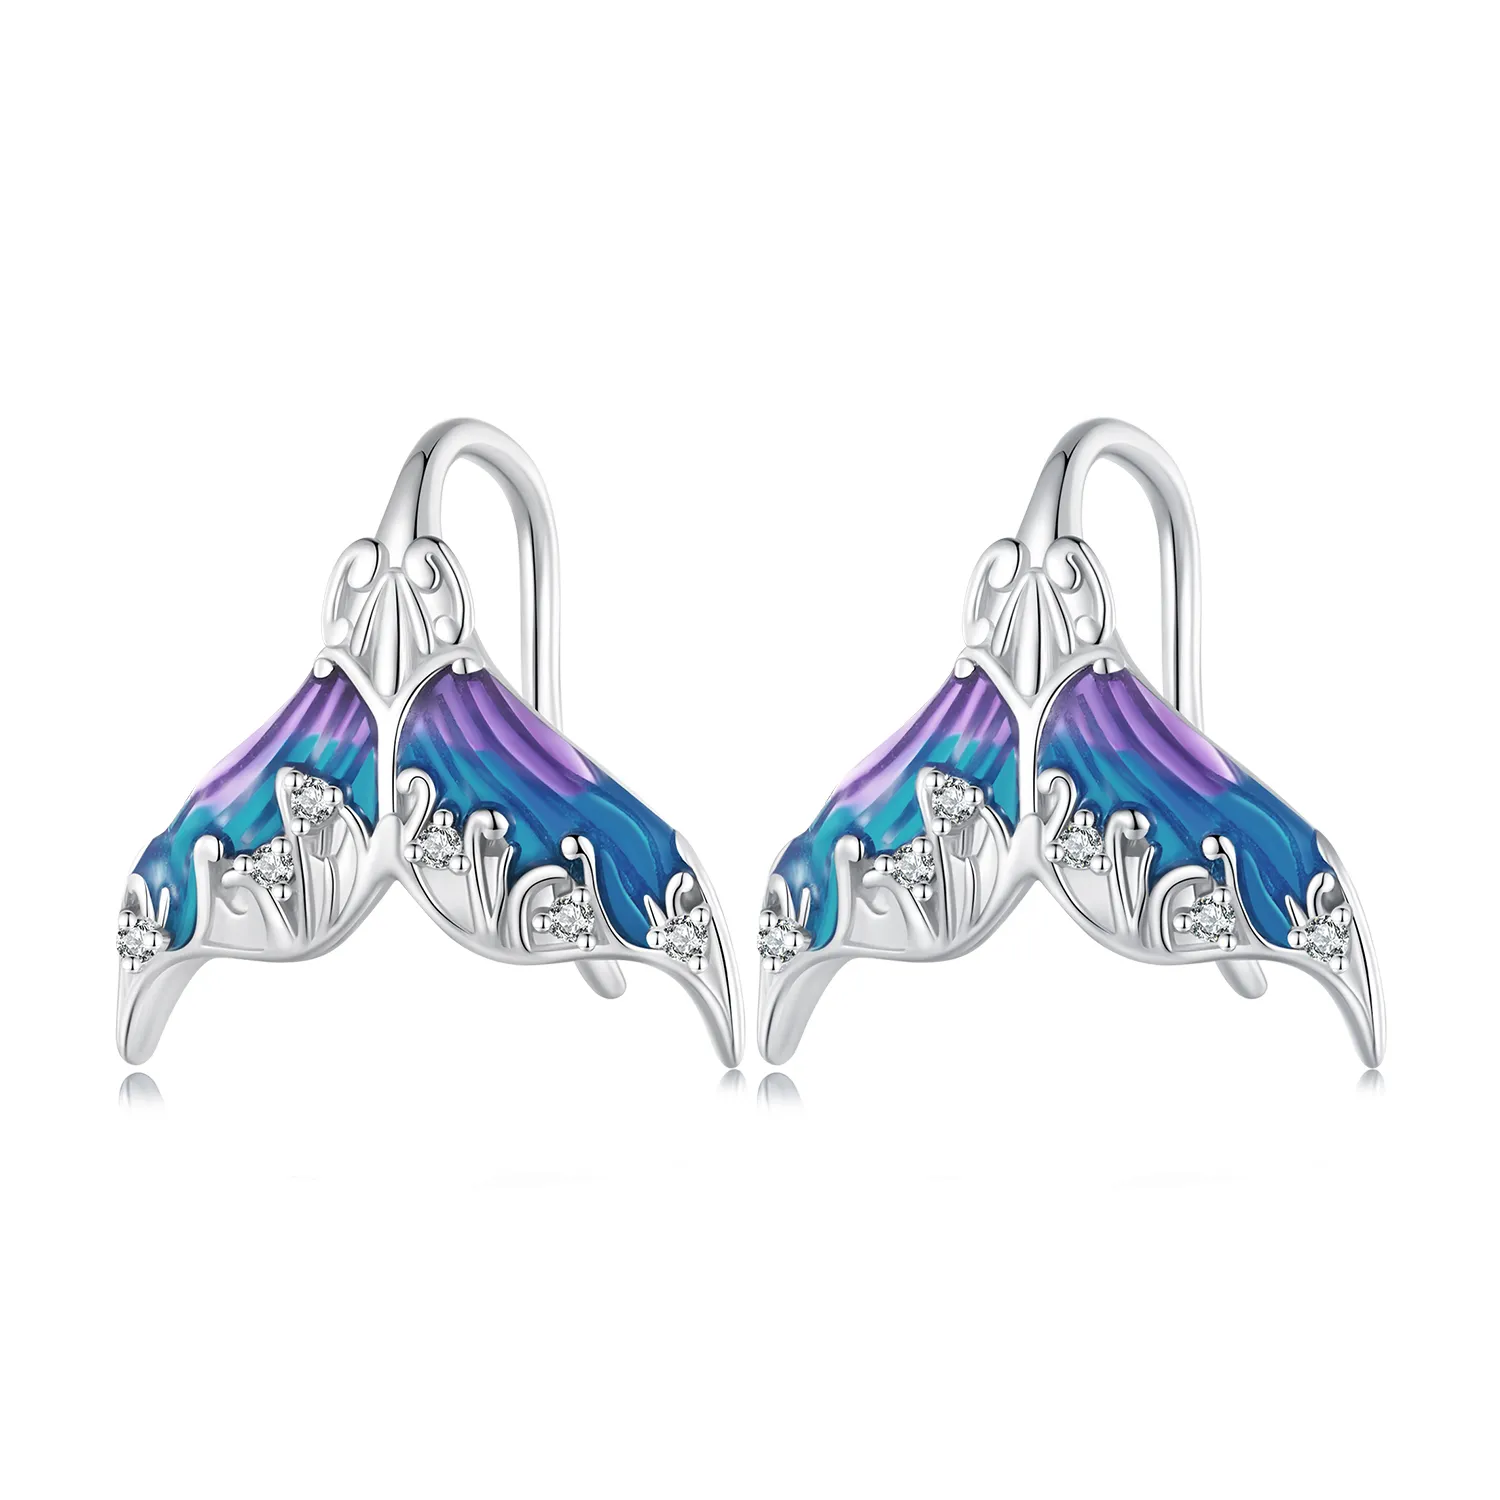 Studuri pentru urechi în stilul Pandora cu coadă de sirena - Dreamman - BSE921